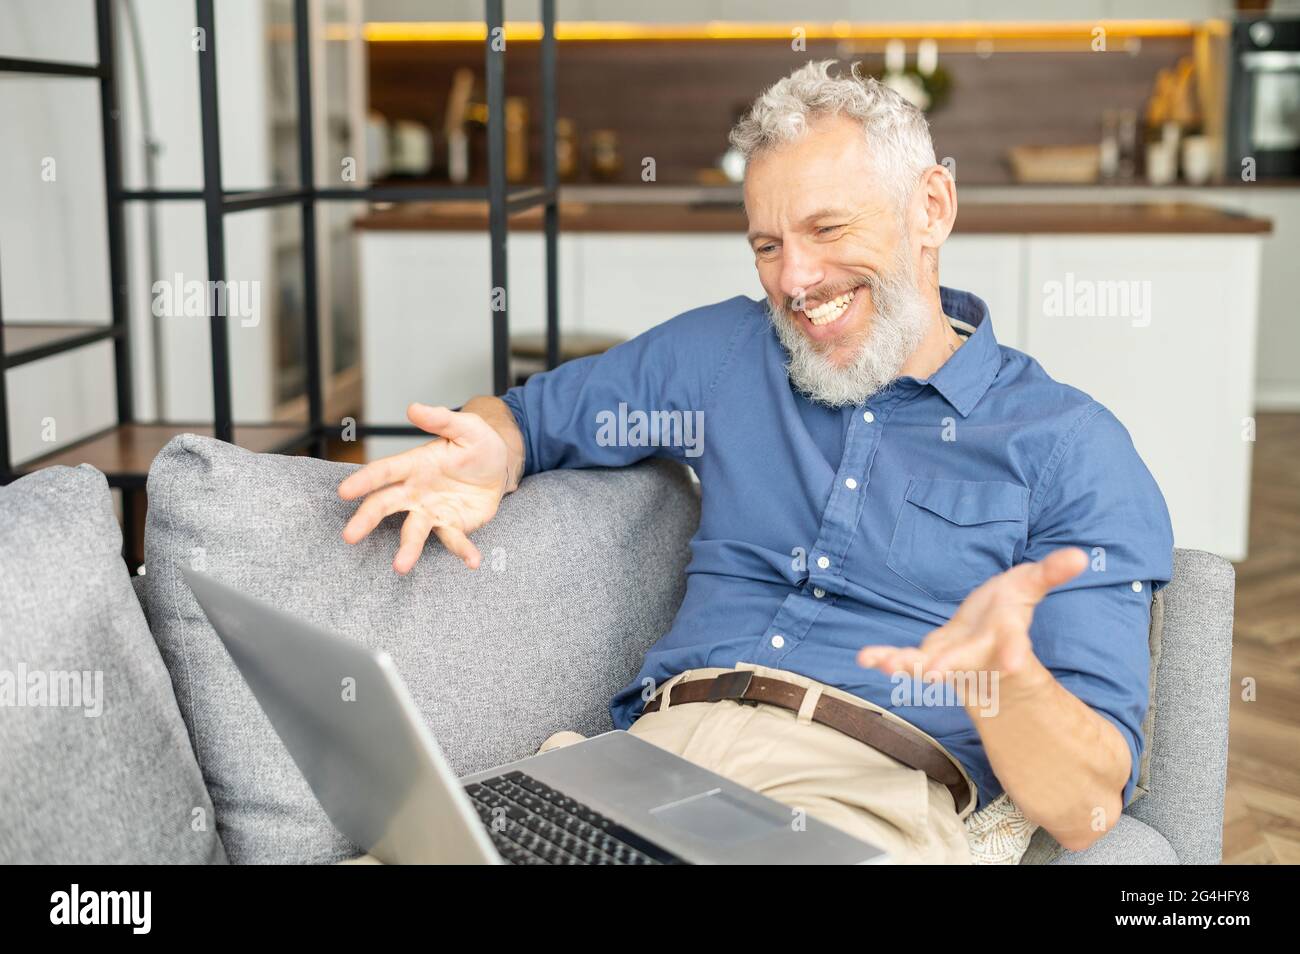 Felice uomo anziano sorridente che usa un computer portatile per la  connessione video, videochiama la famiglia o gli amici, maschio di mezza  età che guarda la webcam e parla con i gesti